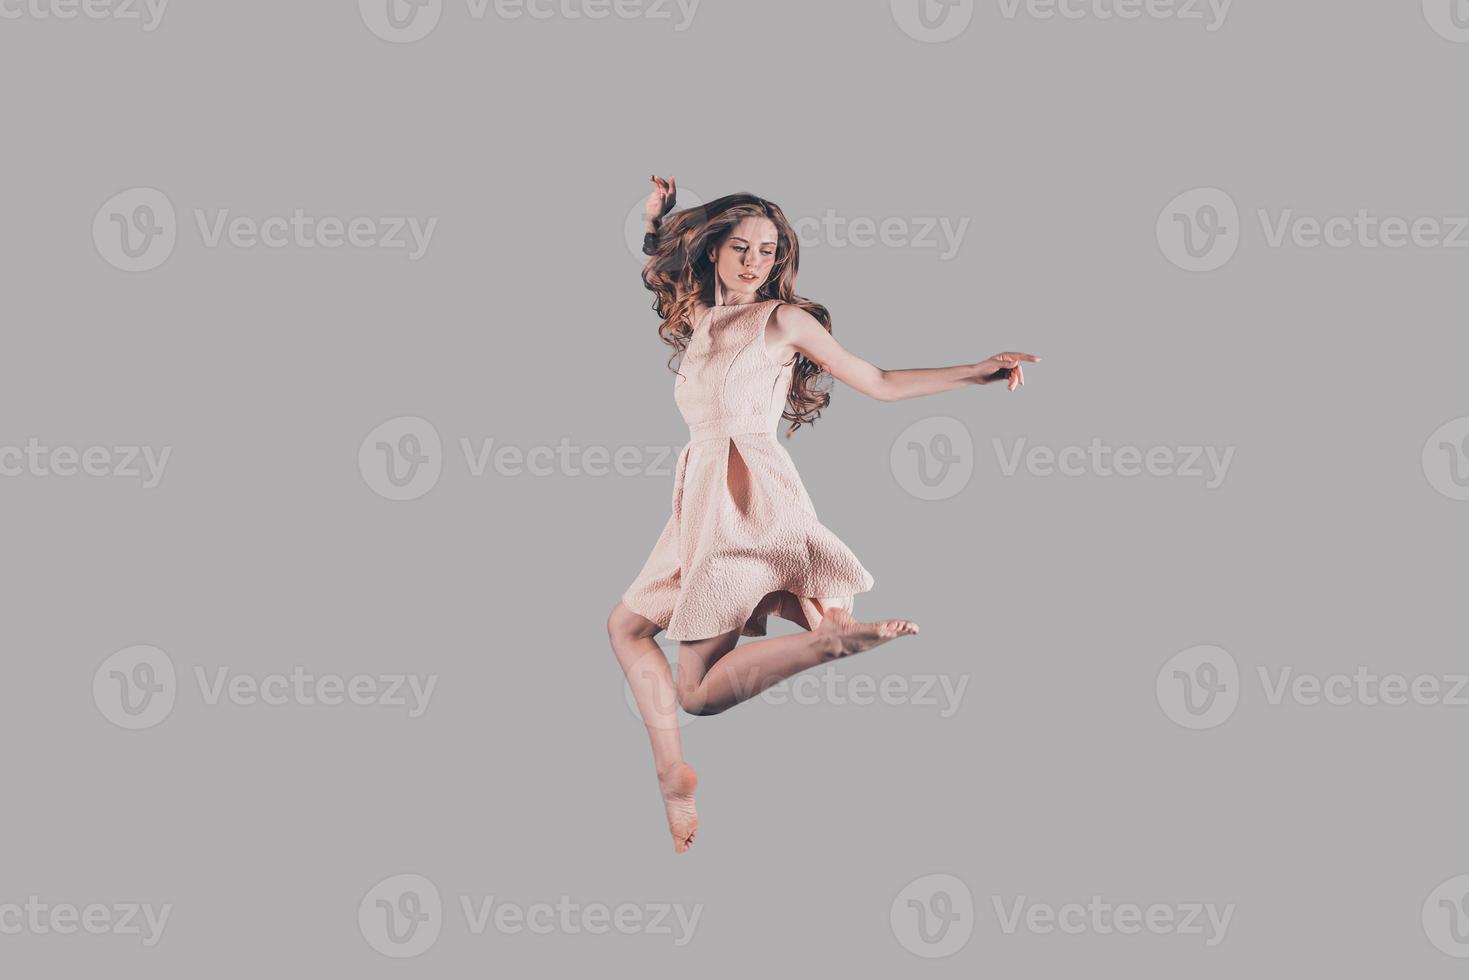 lévitation. prise de vue en studio d'une jeune femme attirante planant dans l'air photo